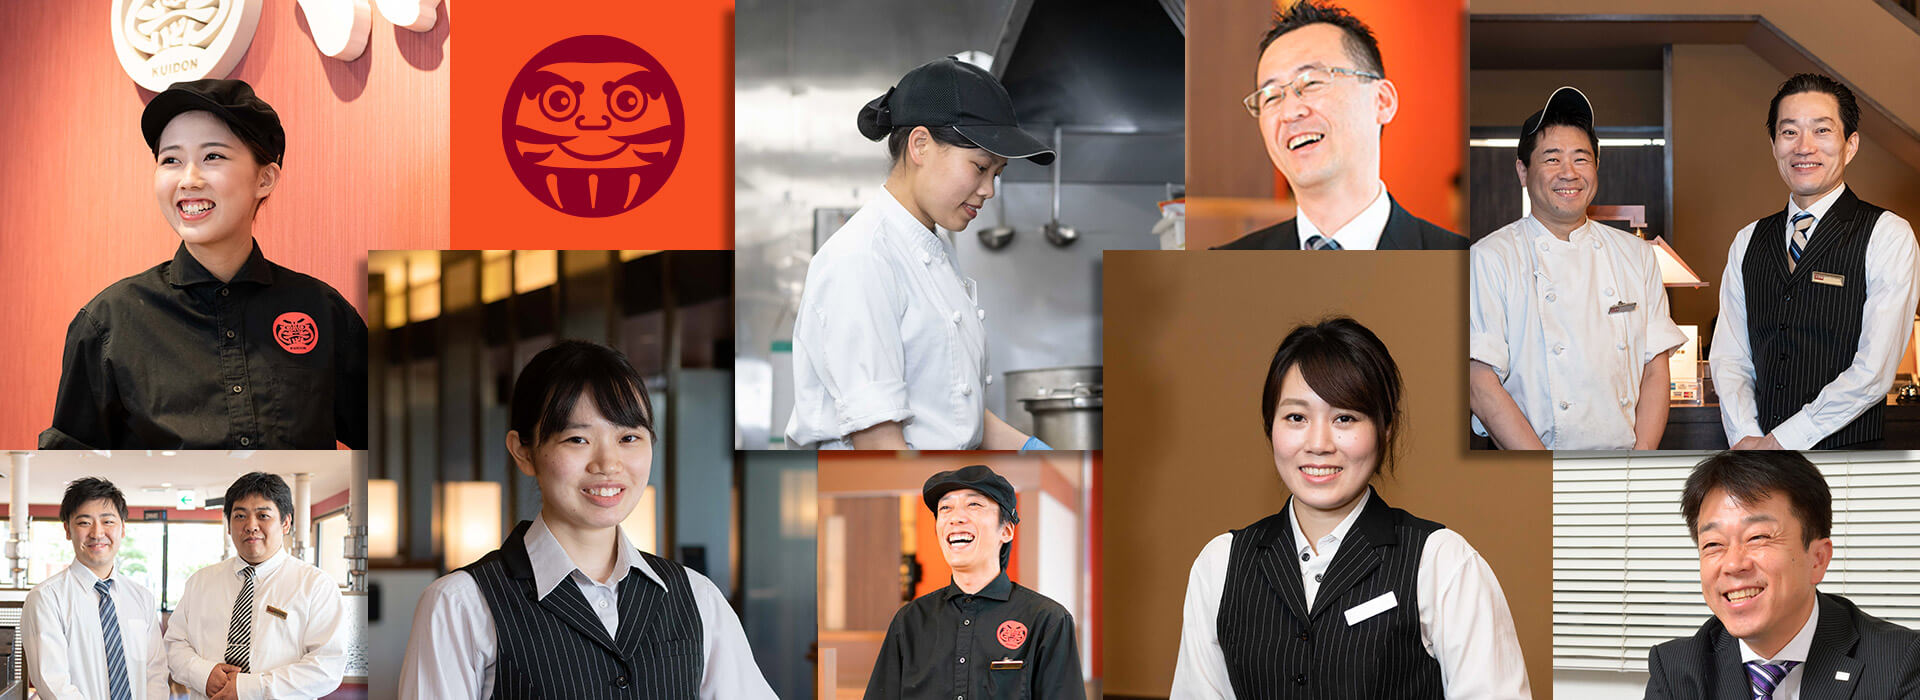 お客さまと社員を笑顔にする「日本一」の焼肉店へ